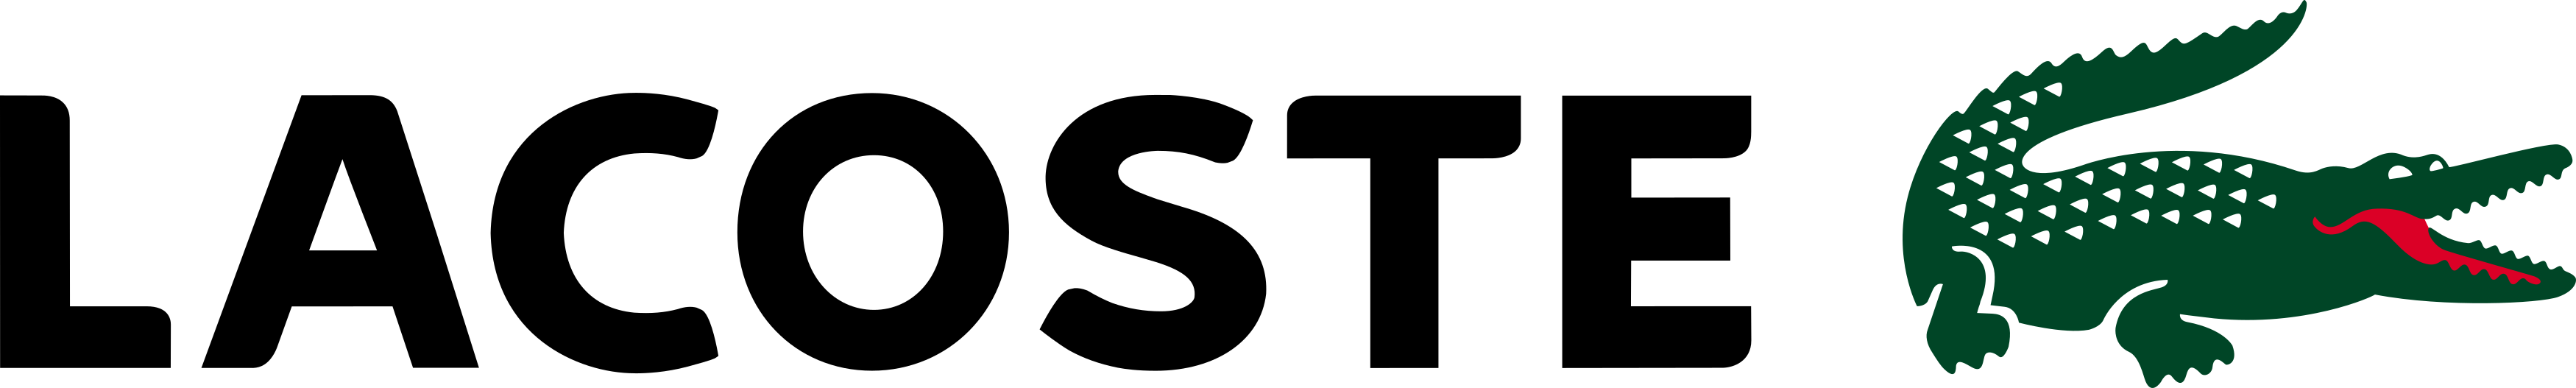 lacoste logo 1 - Lacoste Logo